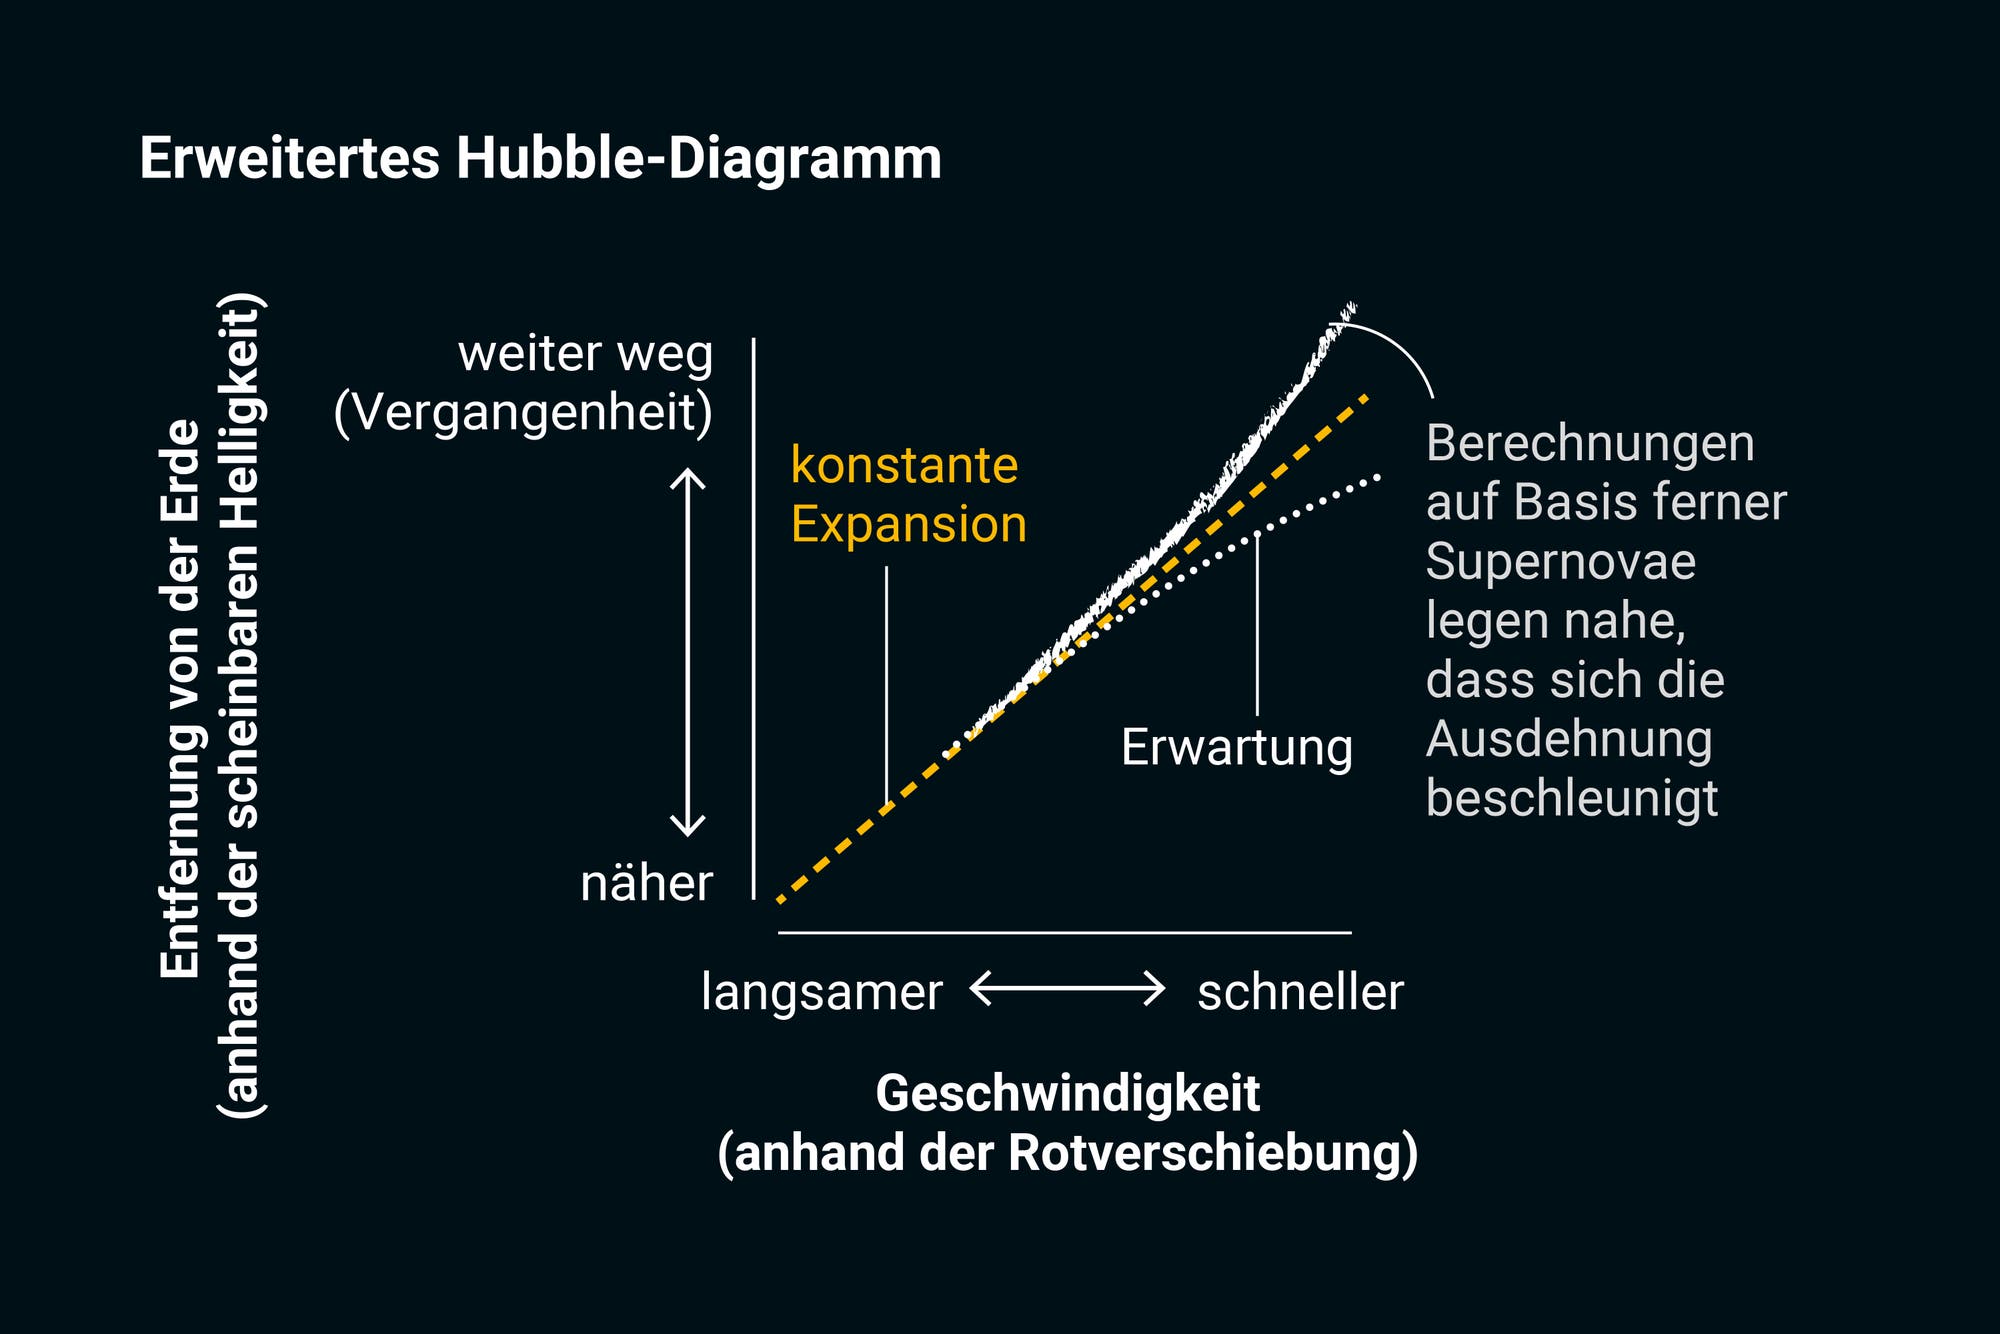 Erweitertes Hubble-Diagramm